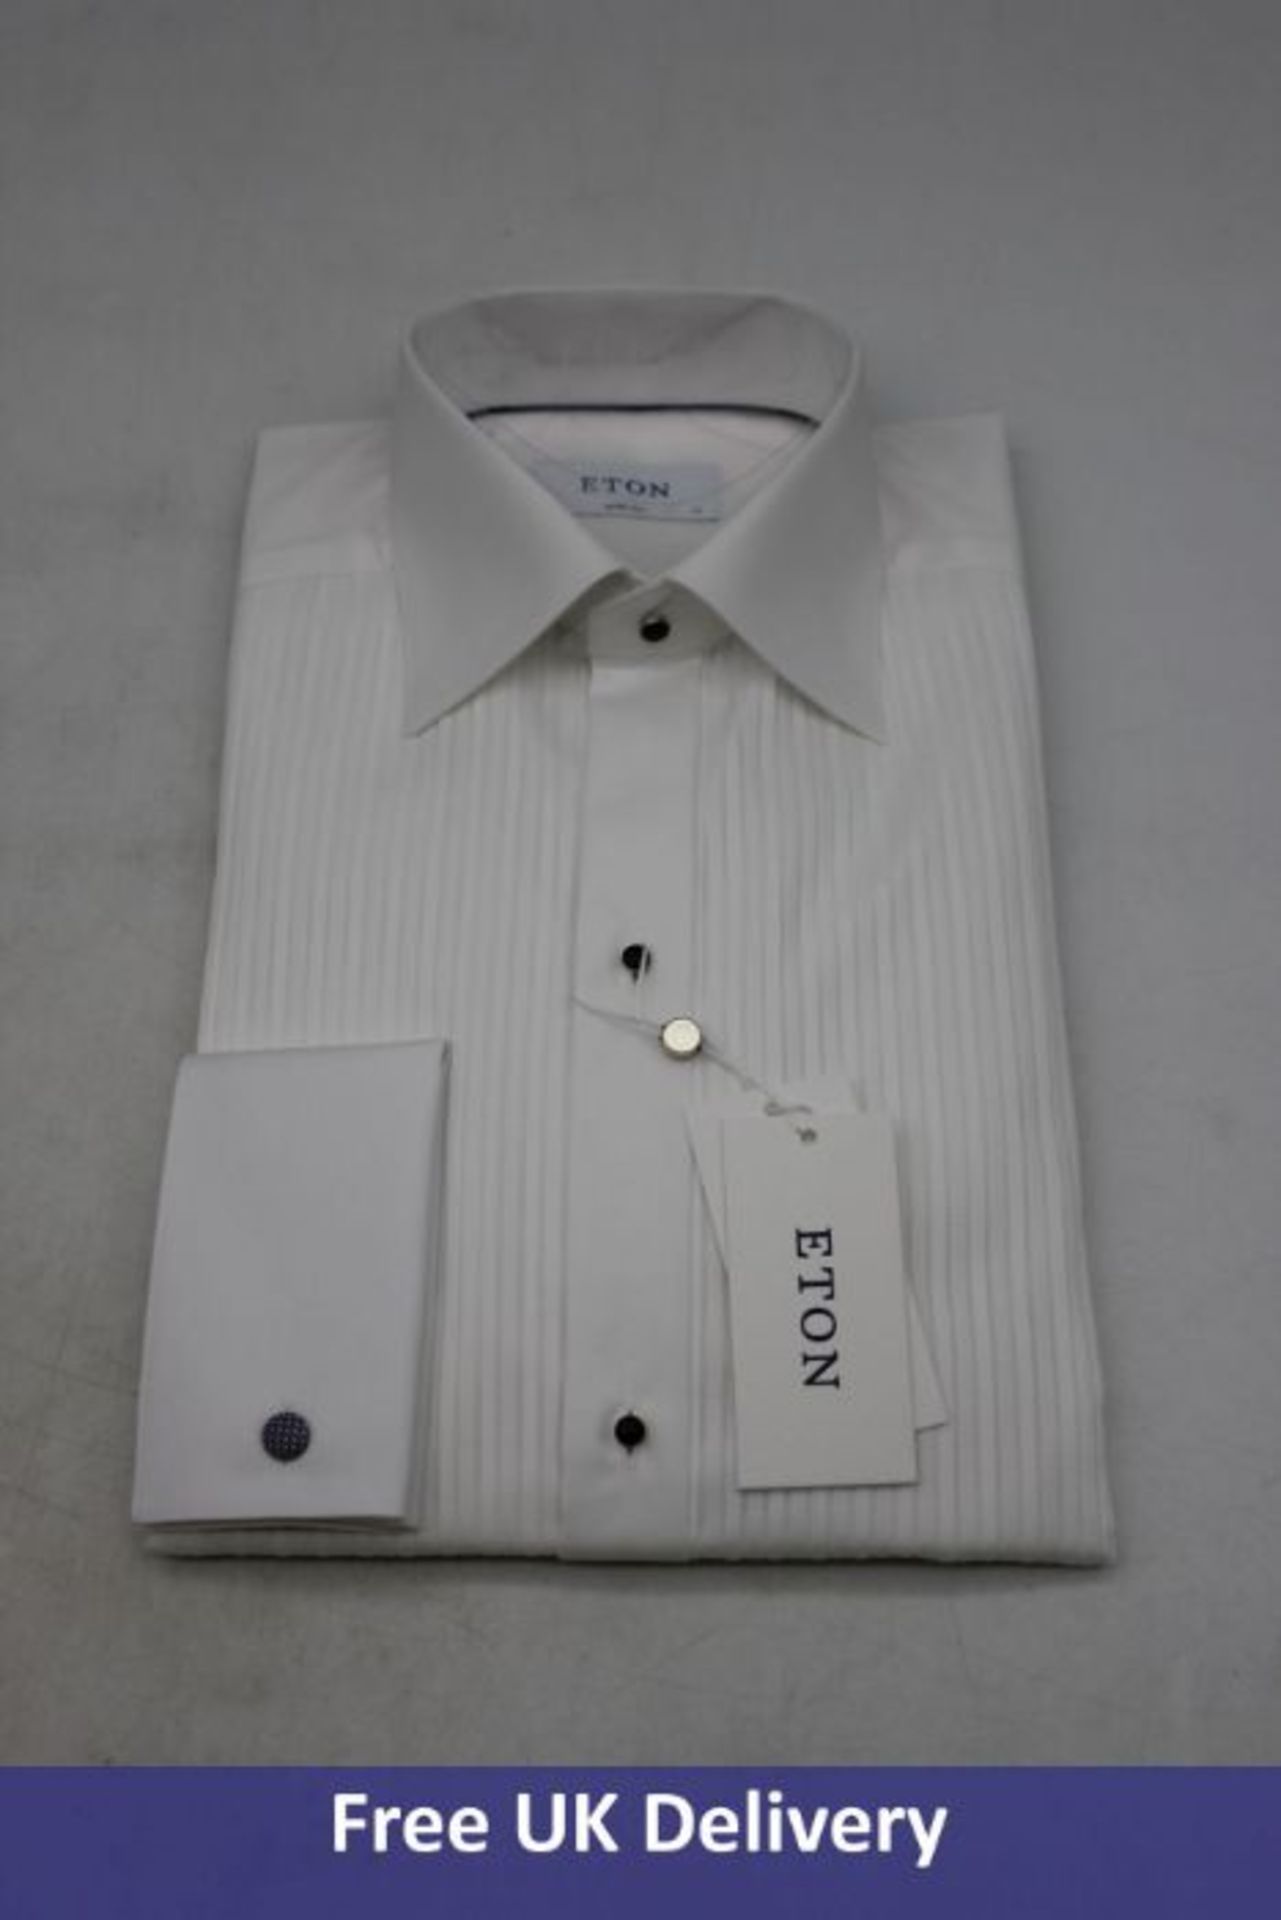 Eton Men's Tuxedo Shirt, White, Size 38/15